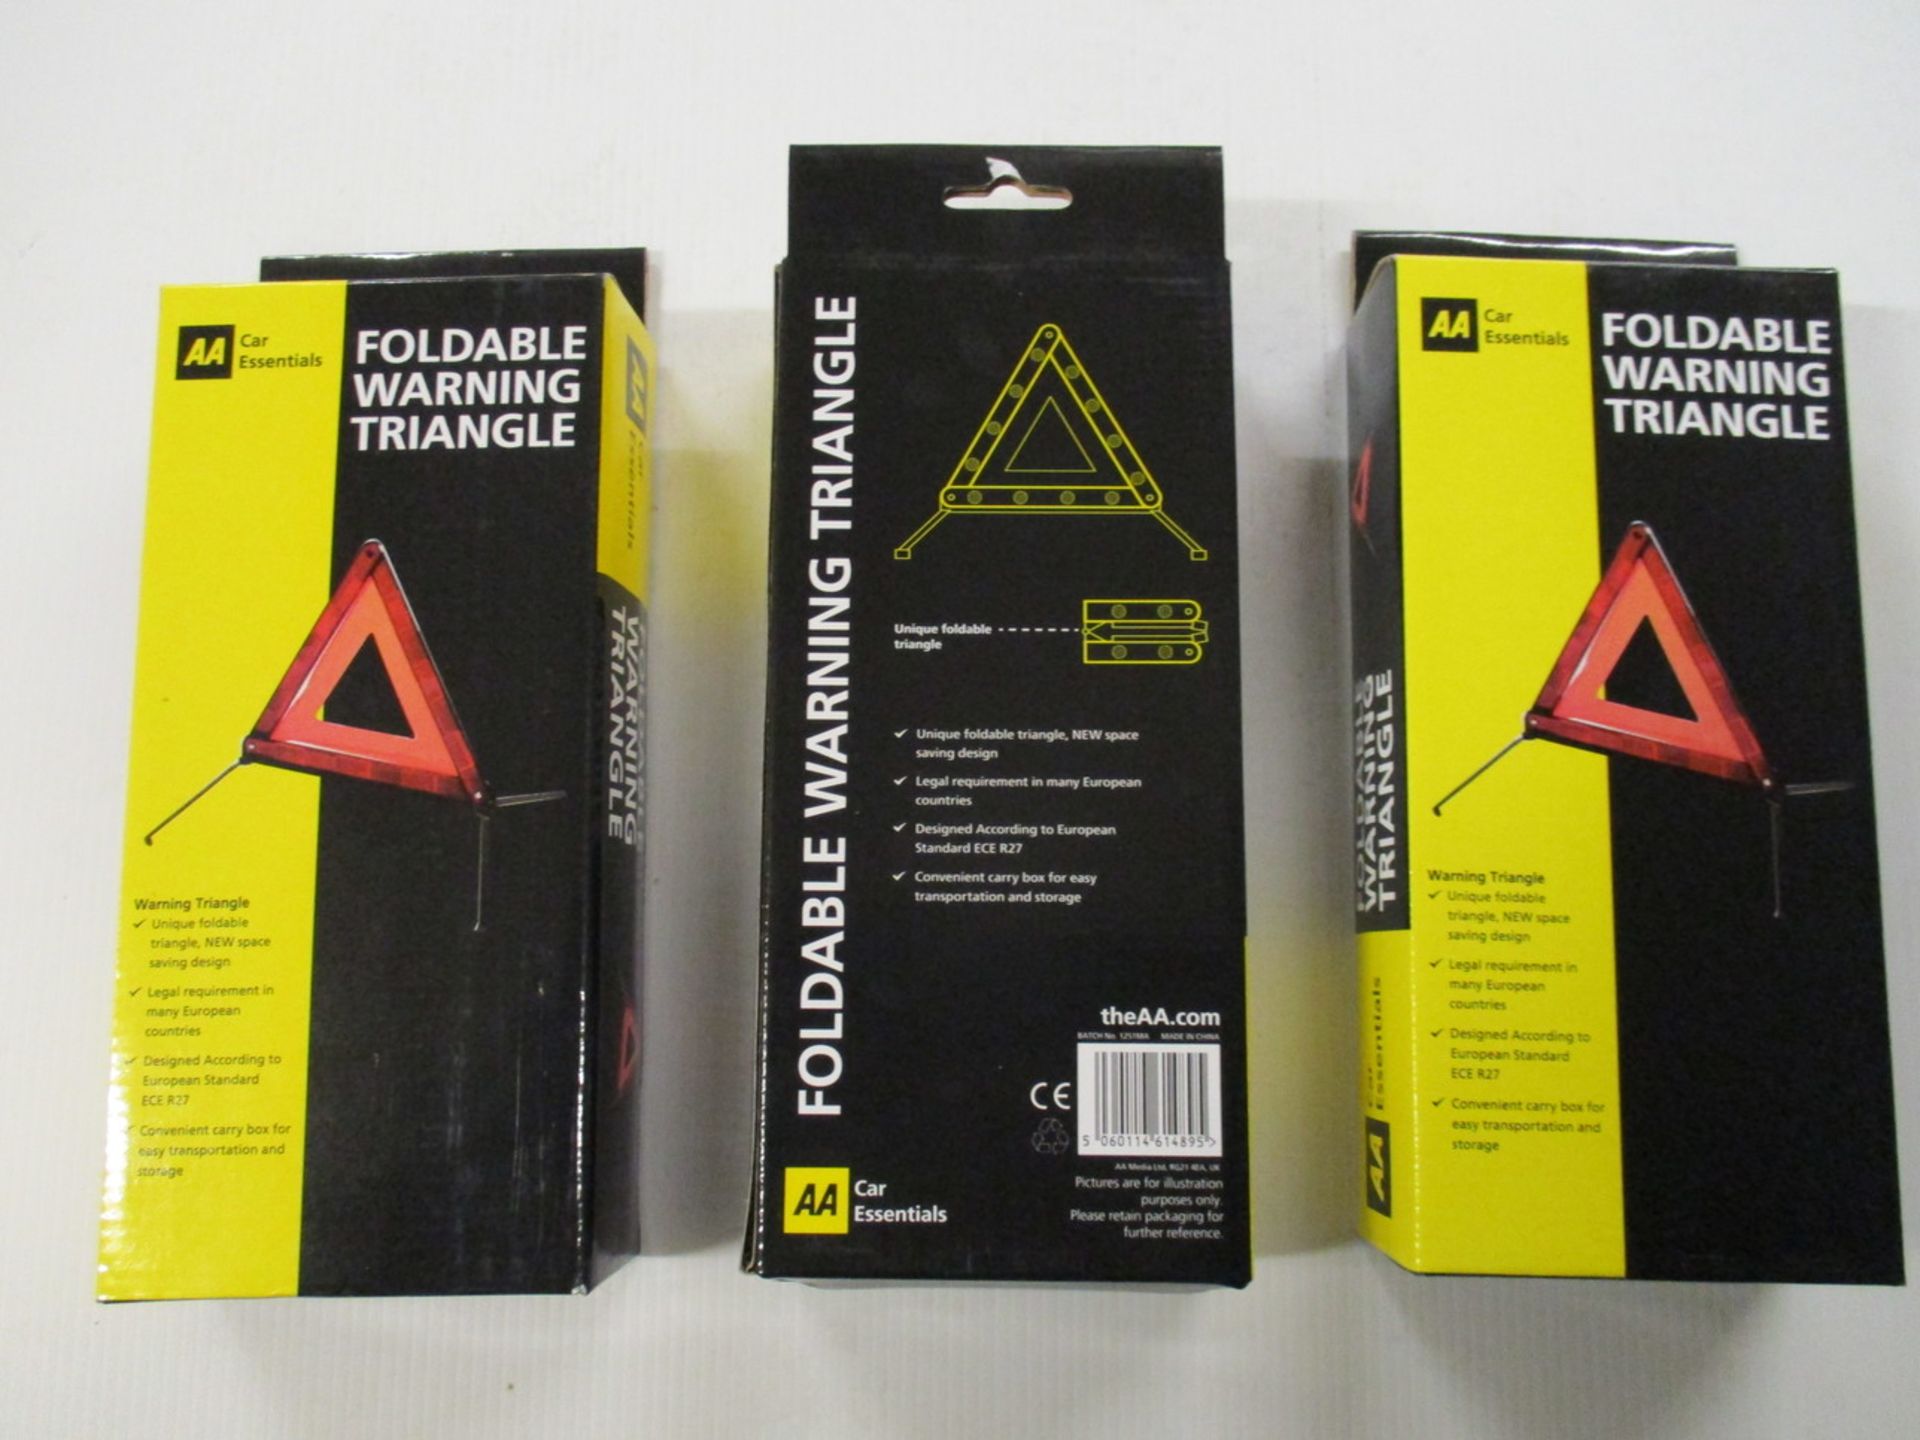 10pcs x brand neww AA foldable warning triangle new & boxed